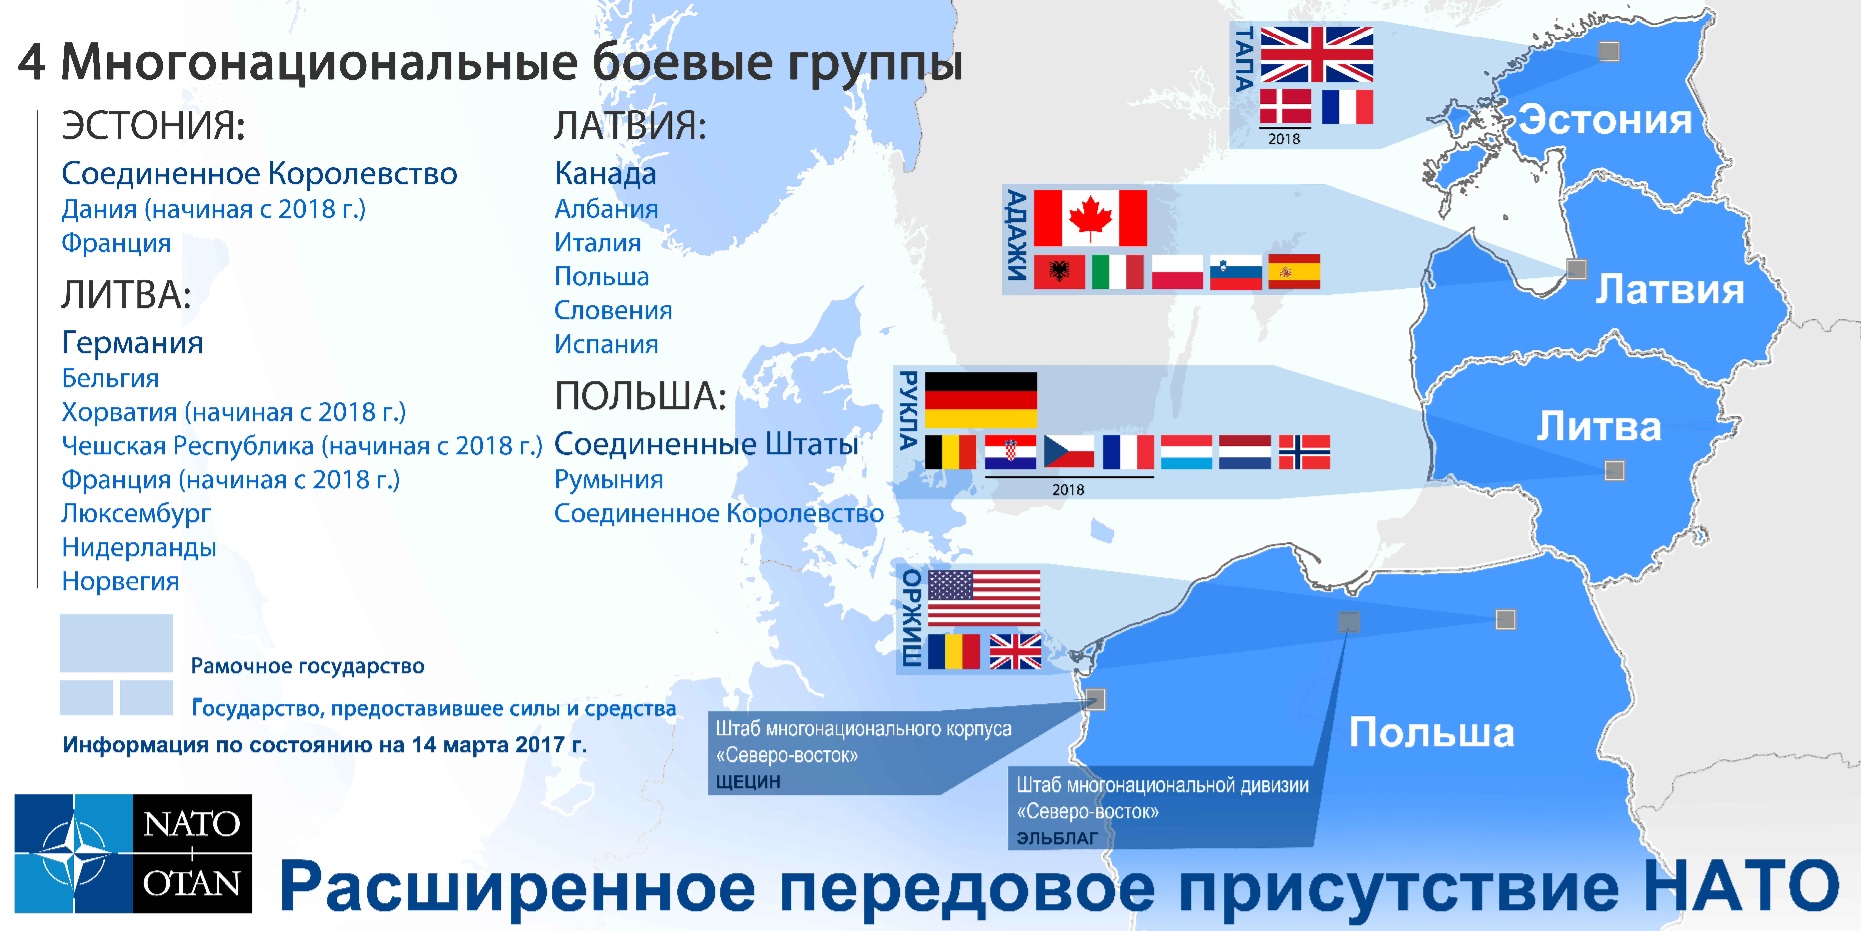 Угрозы стран нато. Расширенное передовое присутствие НАТО. Страны НАТО. НАТО В Прибалтике карта. Прибалтийские страны НАТО.